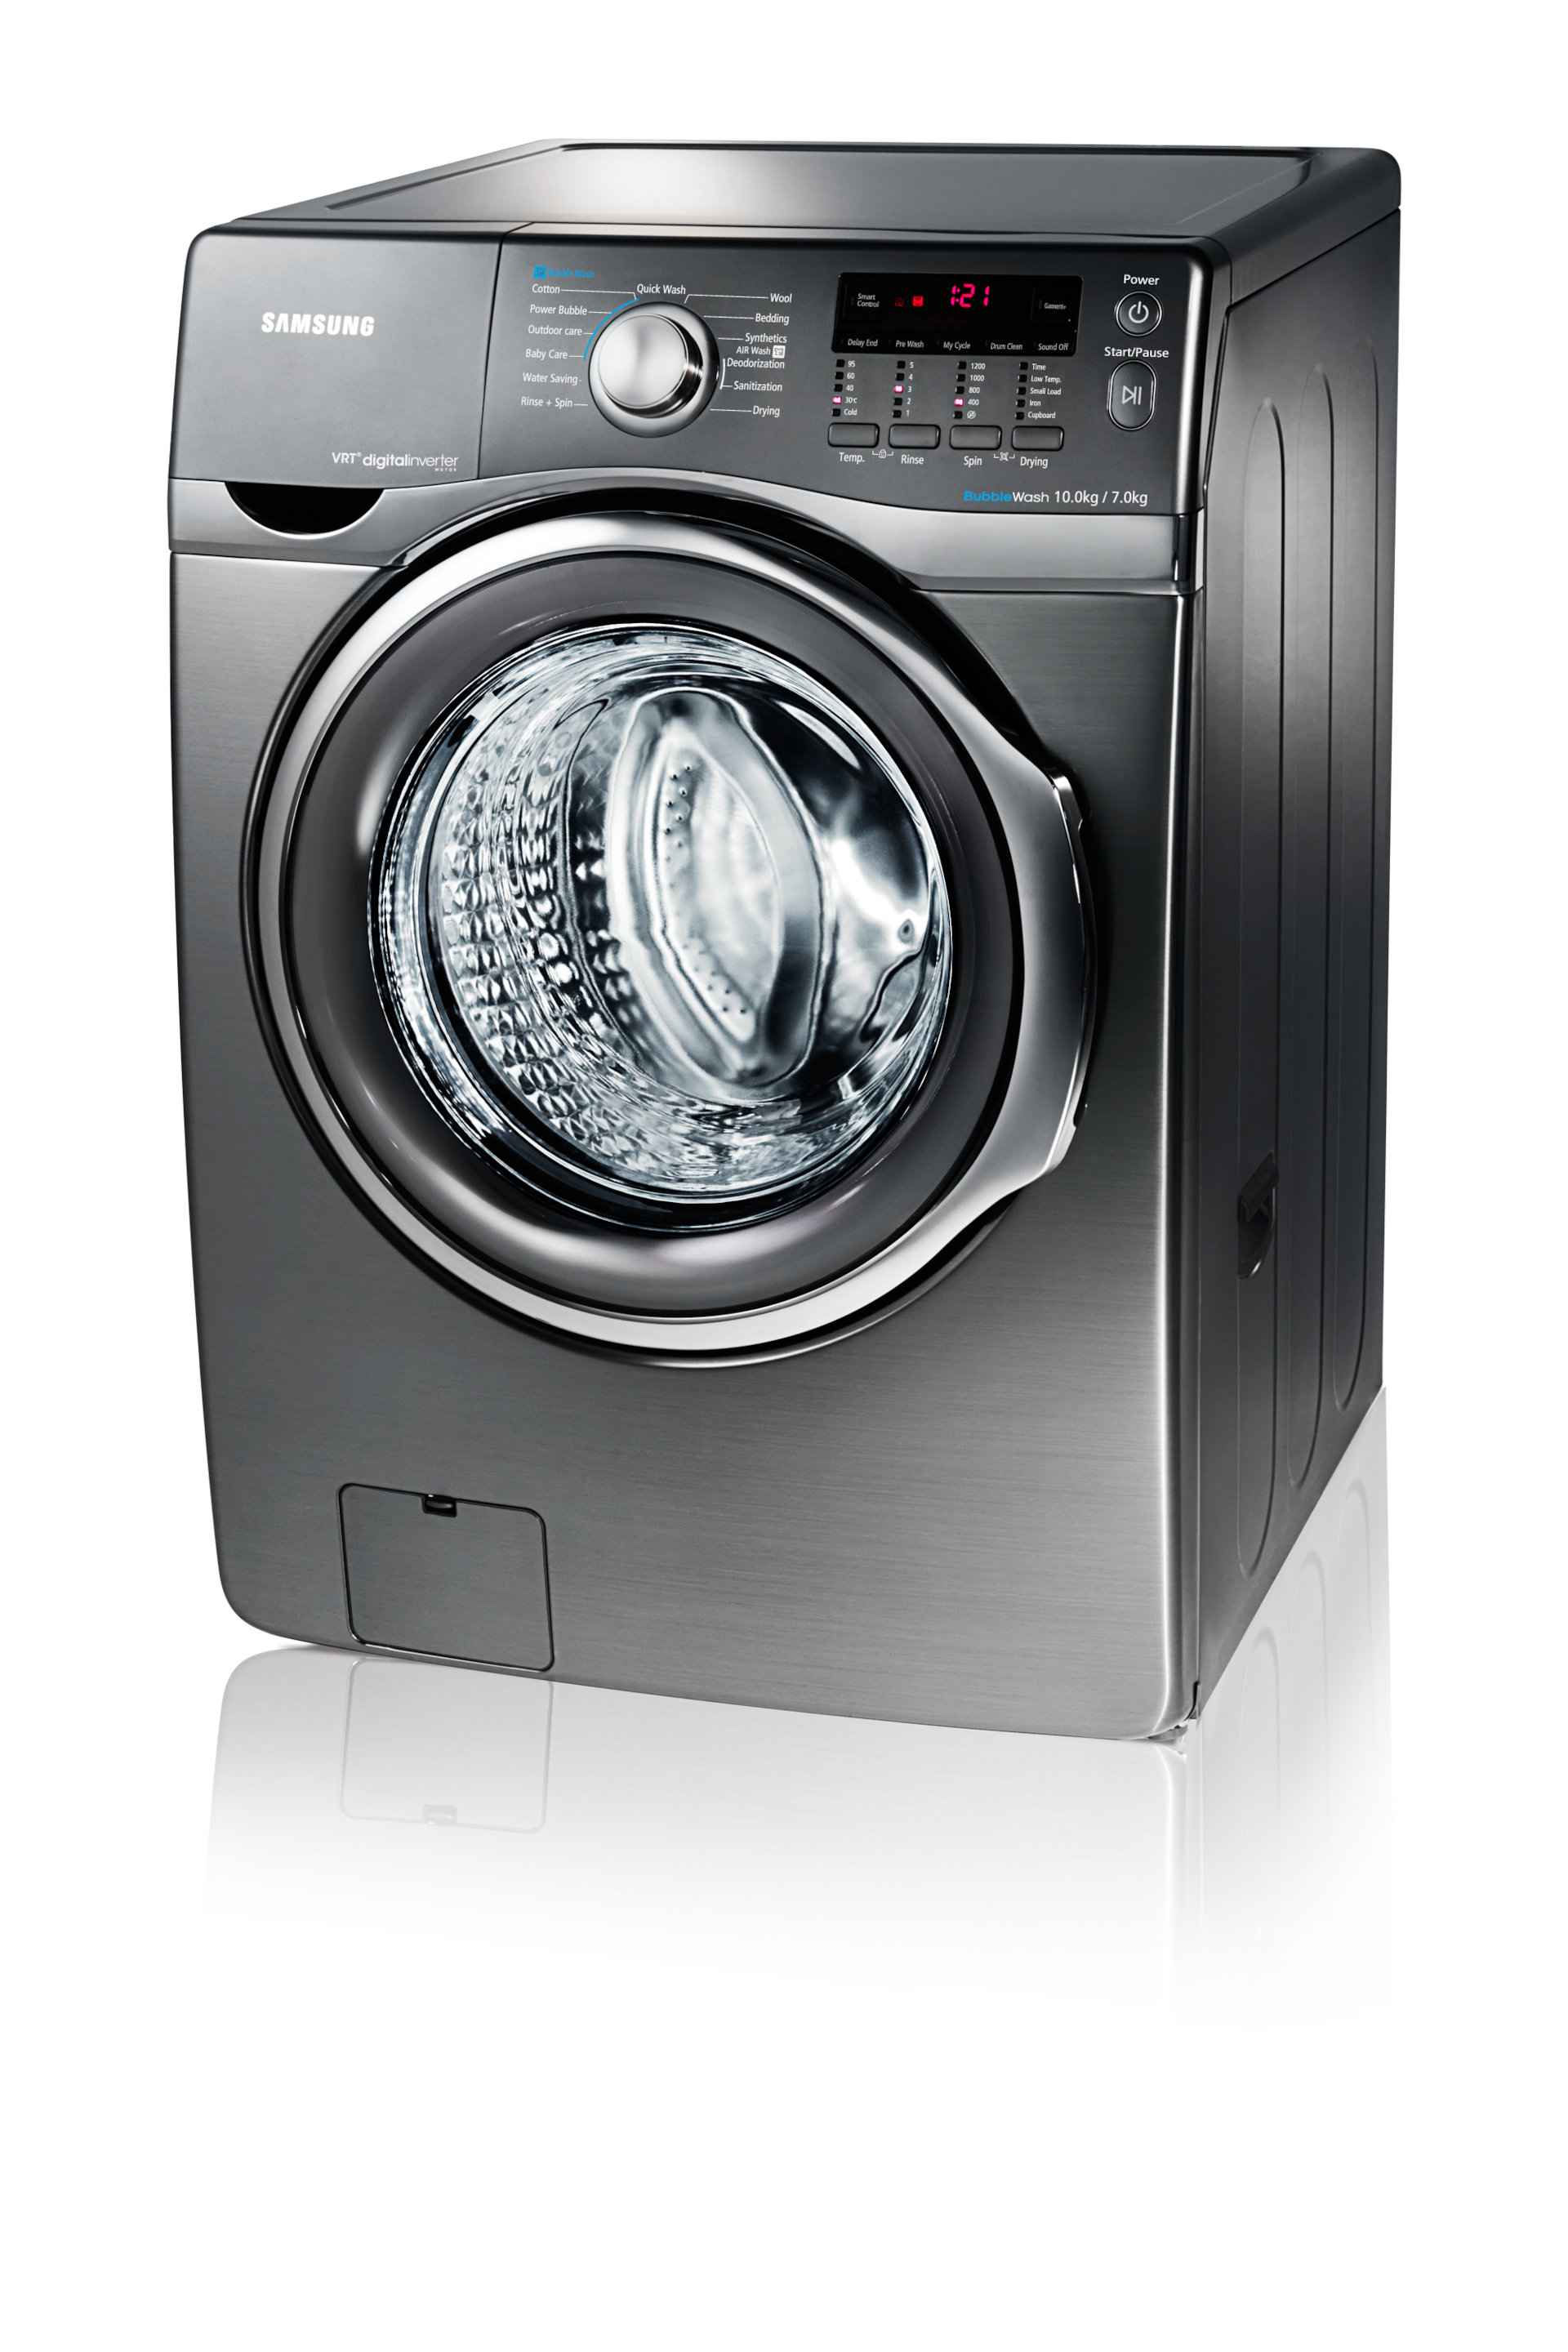 Стиральная машина 7 кг. Стиральная машина Samsung wd90n74lnoo/LP. Samsung add Wash Dryer 8900. Washing Machine Samsung vrt. Стиральная машина самсунг с вай фай.